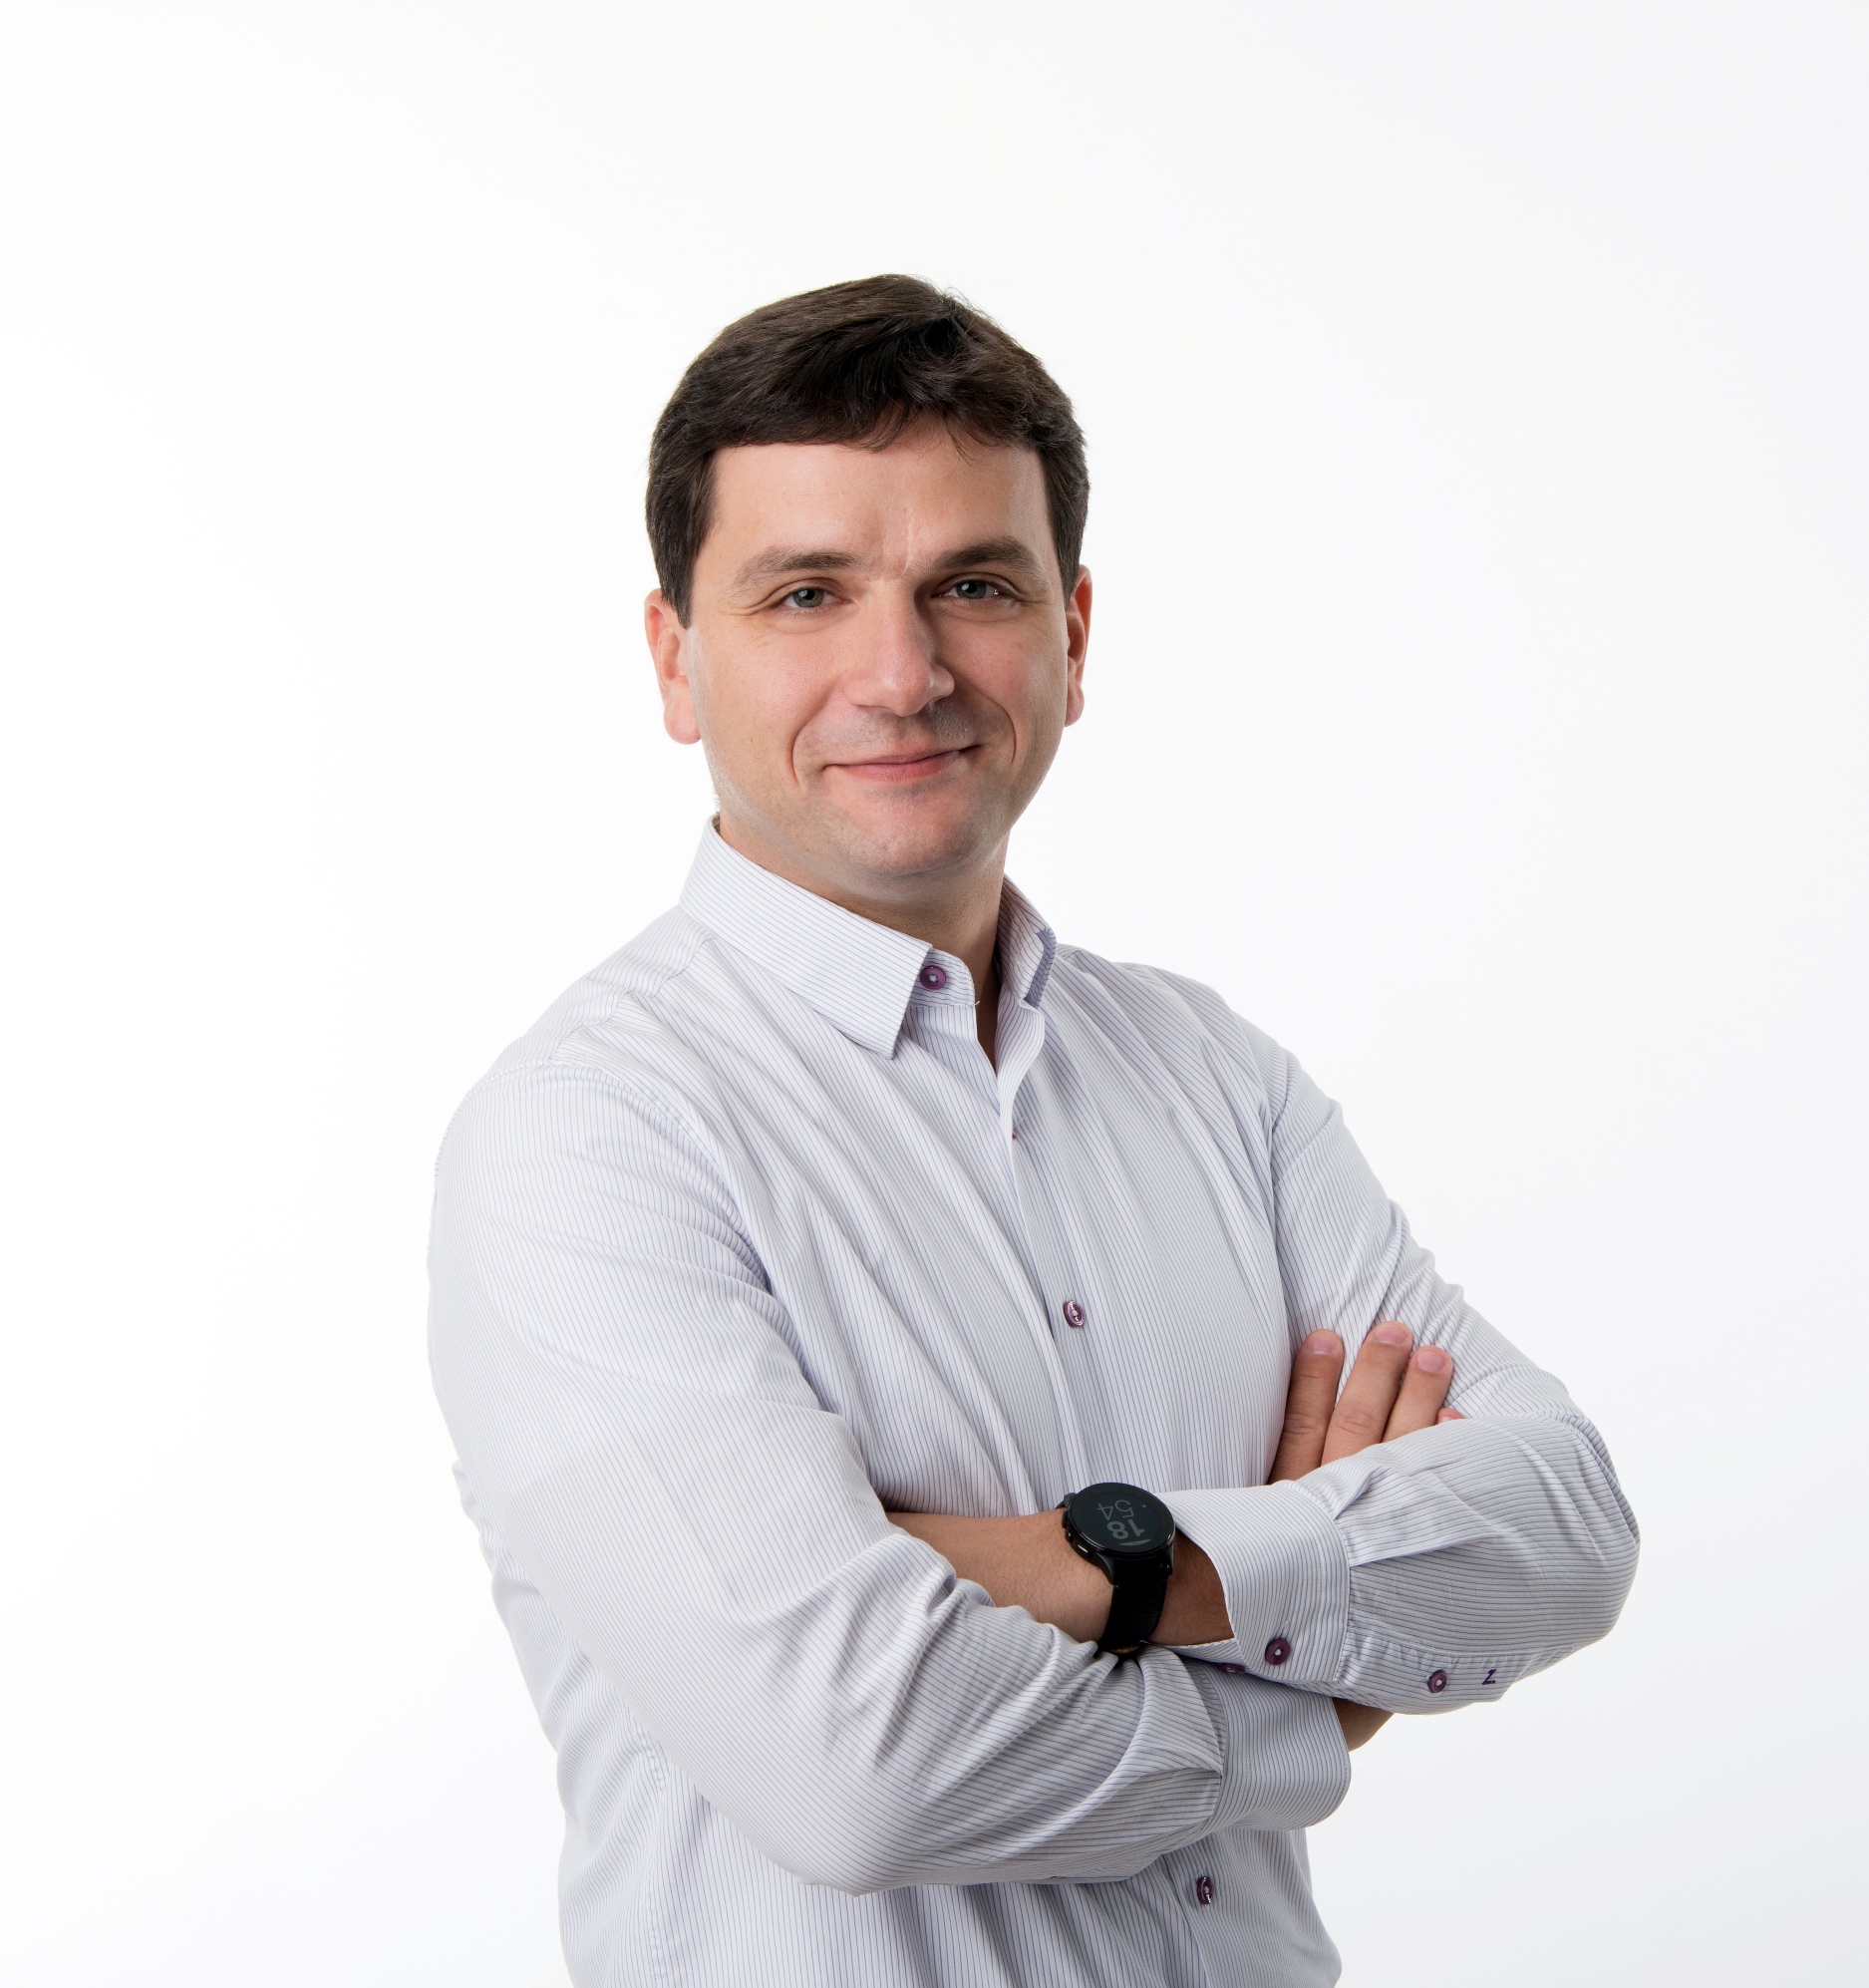 Alexandru Lăpușan se alătură echipei Softlead în calitate de advisor